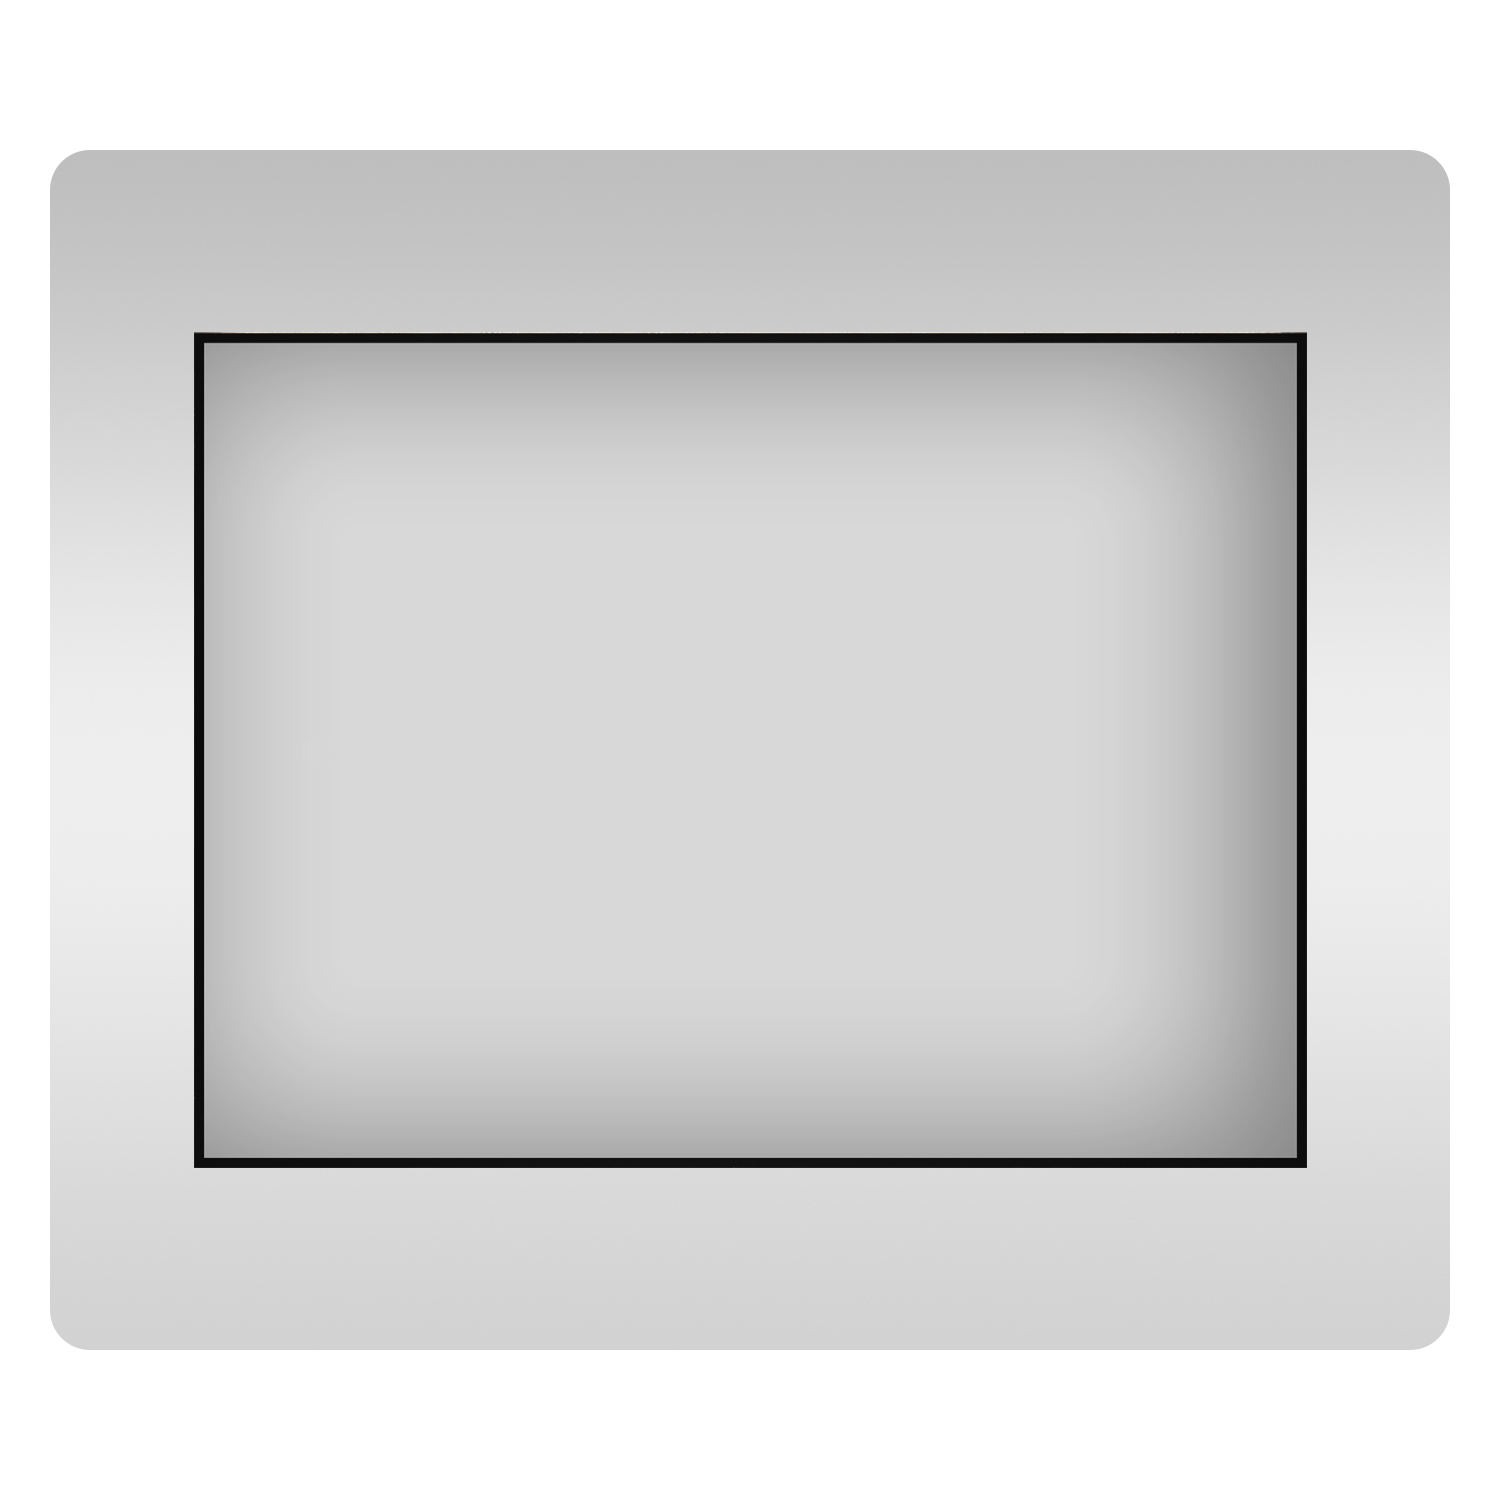 Влагостойкое прямоугольное зеркало Wellsee 7 Rays' Spectrum 172200610, 80х55 см